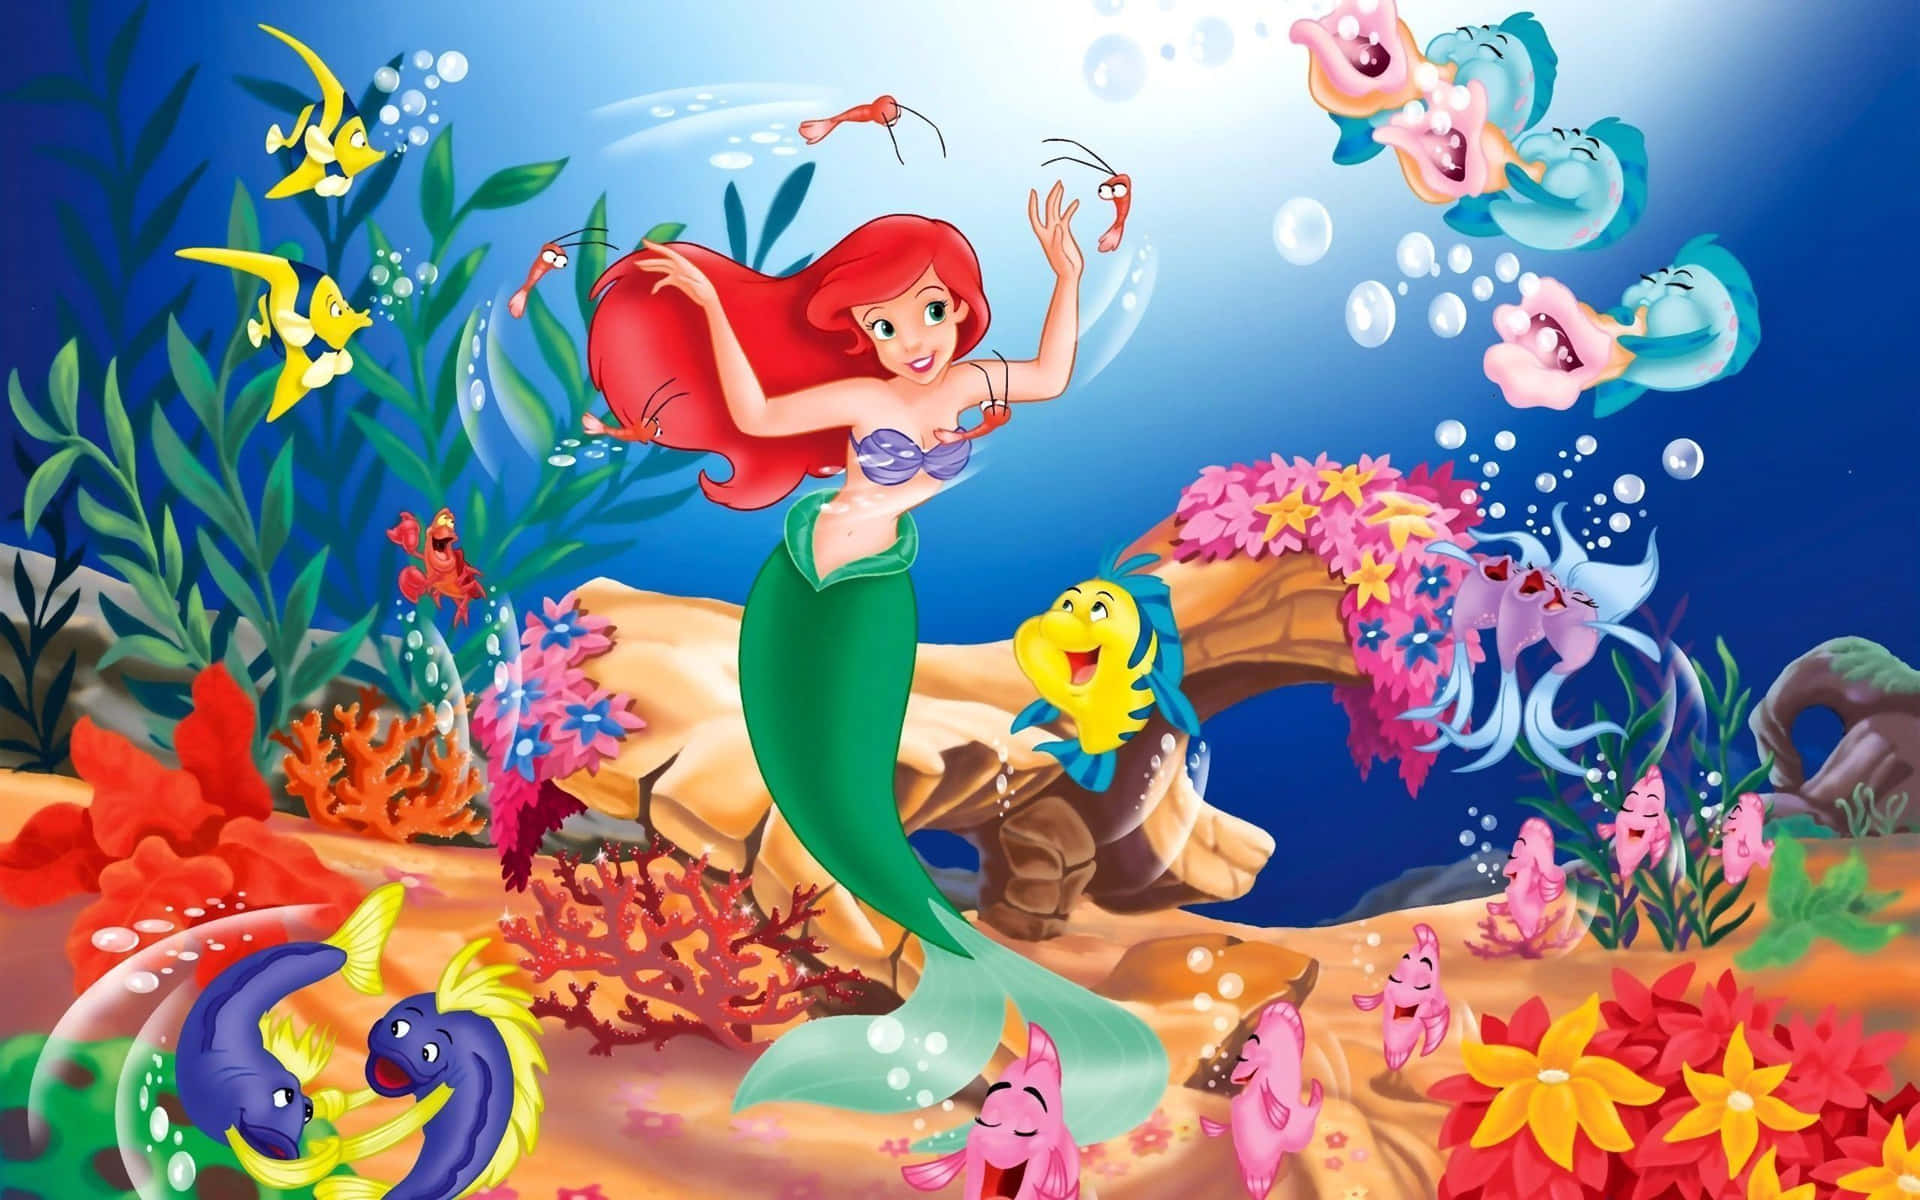 Den bedste Disney baggrund Ariel med hendes venner Flounder og Sebastian!